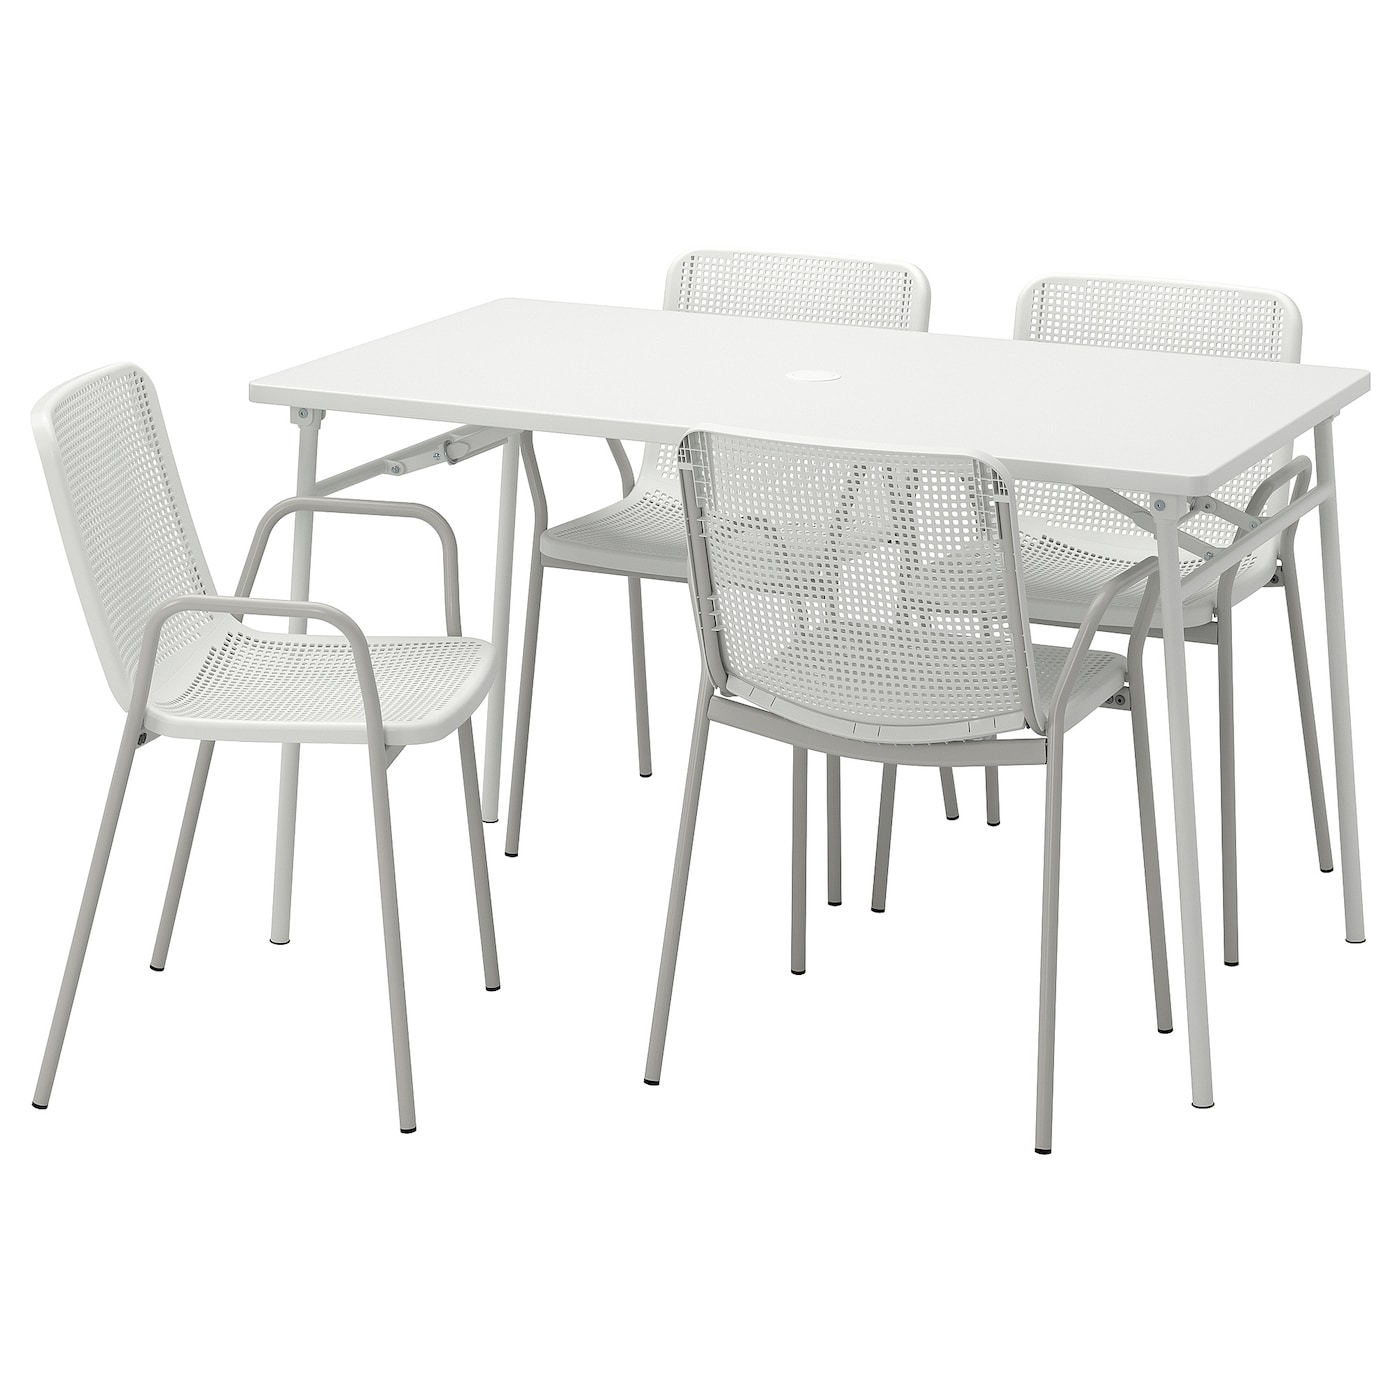 Складной комплект из стула и стола - TORPARÖ/TORPARО IKEA/ ТОРПАРЕ ИКЕА, 130 см, белый